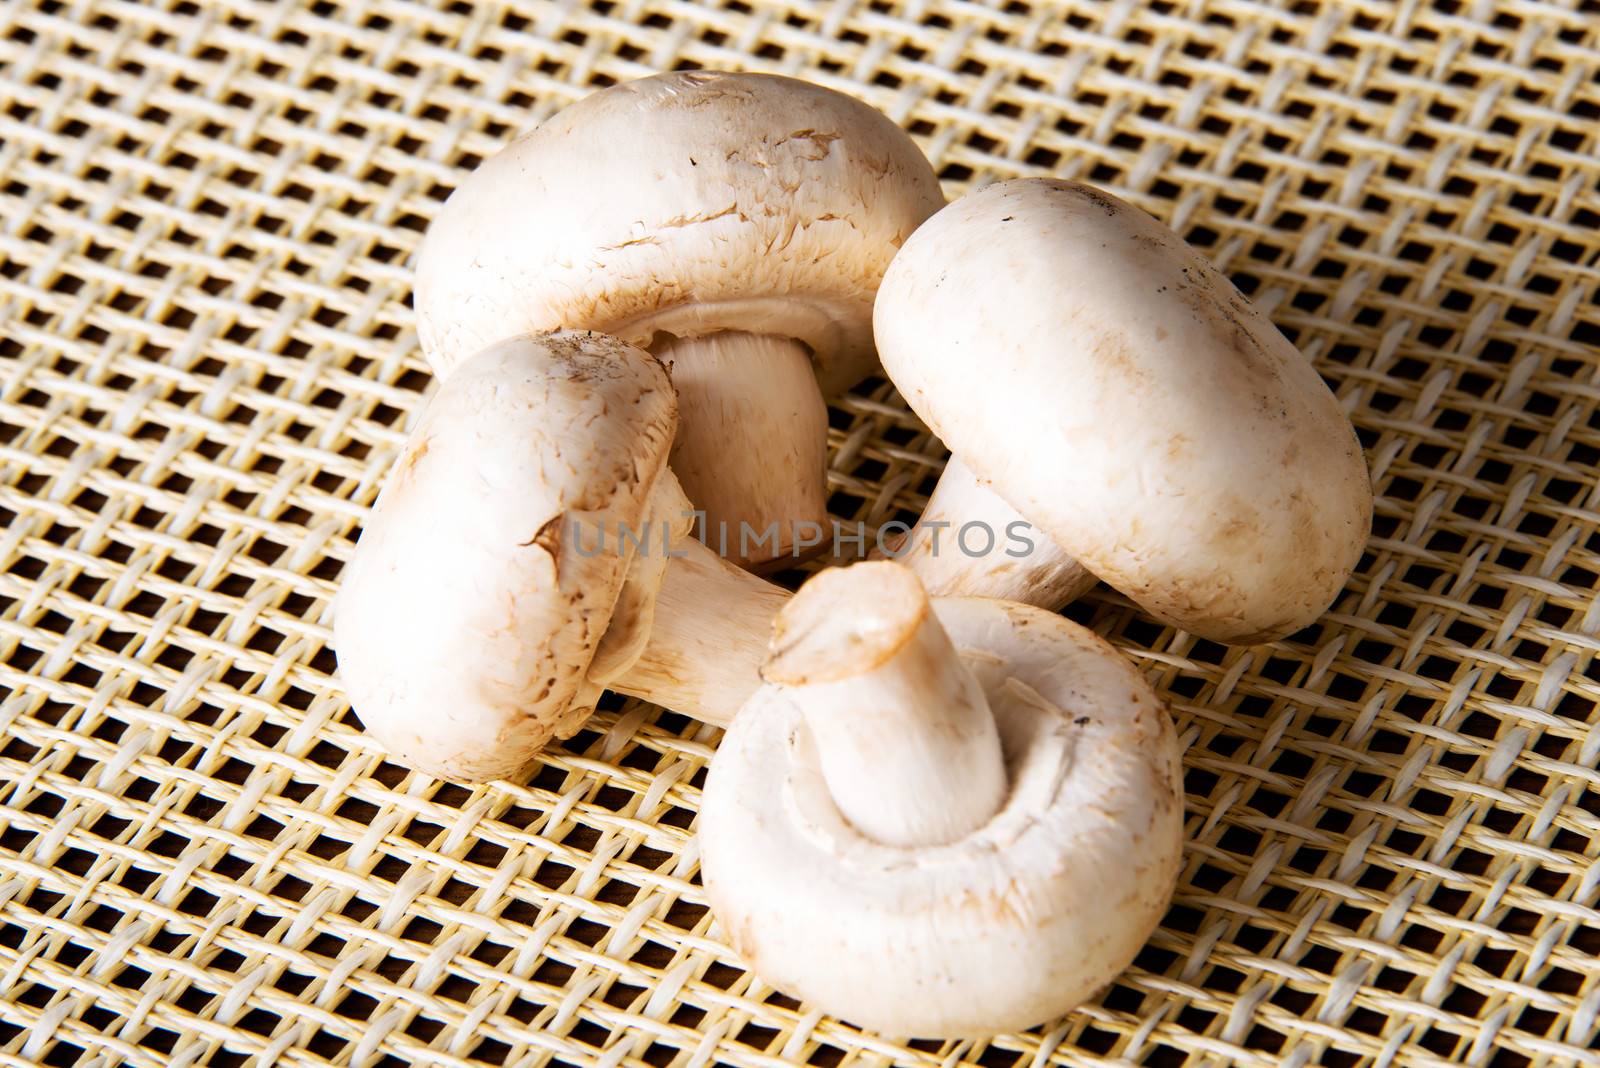 Fresh mashrooms, champignons over kitchen